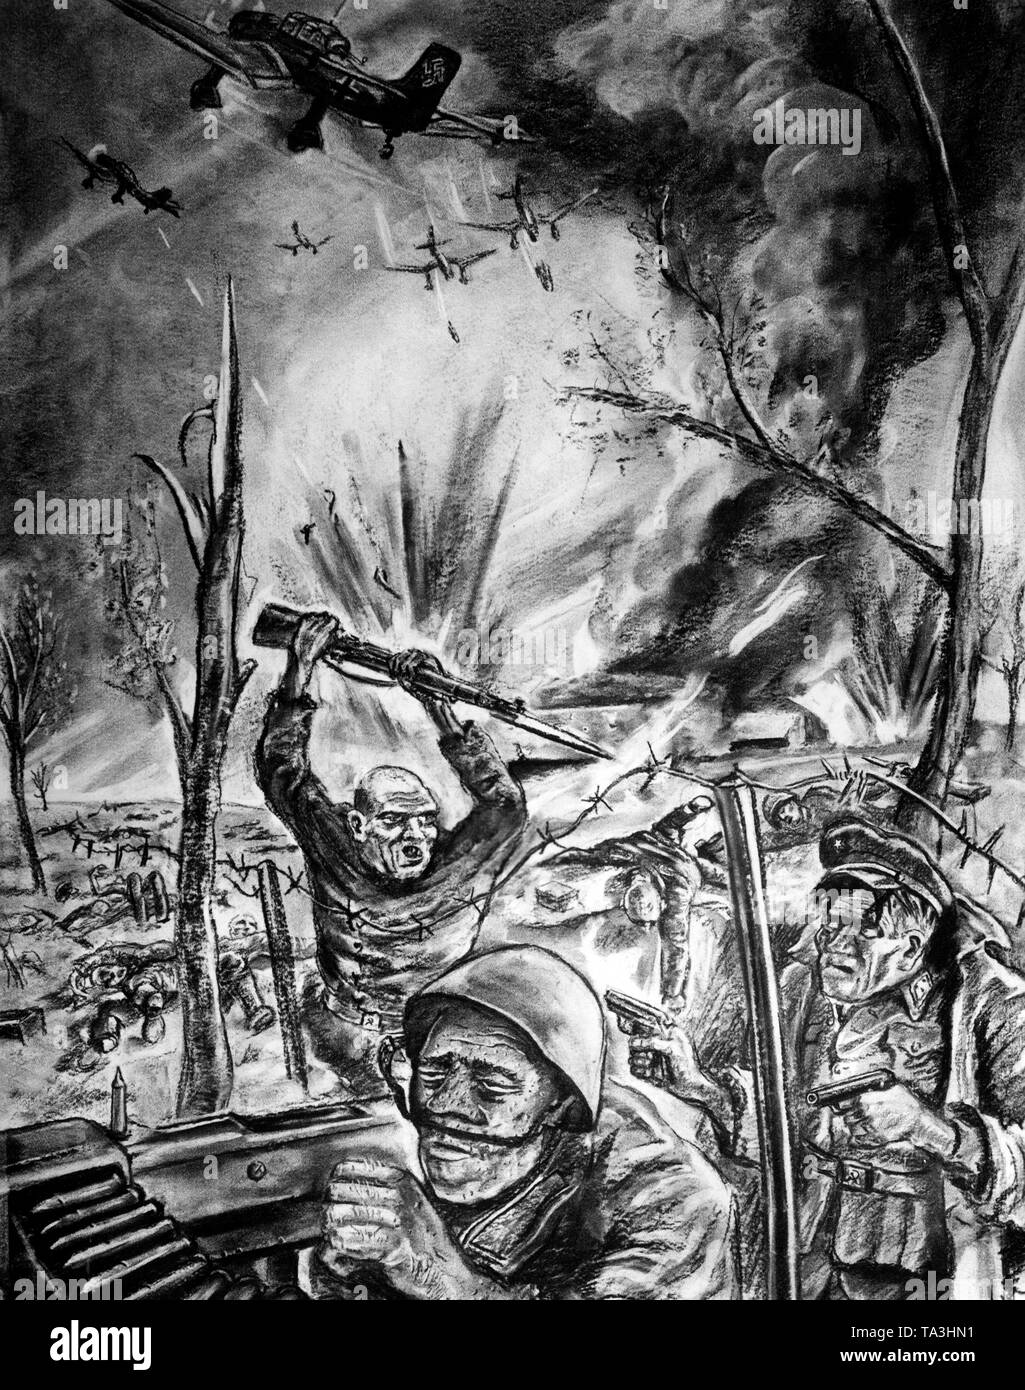 Dessin pour le but d'une propagande anti-soviétique. Elle était censée illustrer comment un commissaire de l'Armée Rouge avait abattu un soldat de l'Armée rouge et d'un tartare, avant le tartre peuvent porter préjudice à la commissaire à la baïonnette. Dans l'arrière-plan, une indication d'une attaque de l'infanterie allemande et finlandaise. Cette caricature de points à la déshumanisation des membres de l'armée russe. Photo de l'entreprise de propagande (PK) Banque D'Images